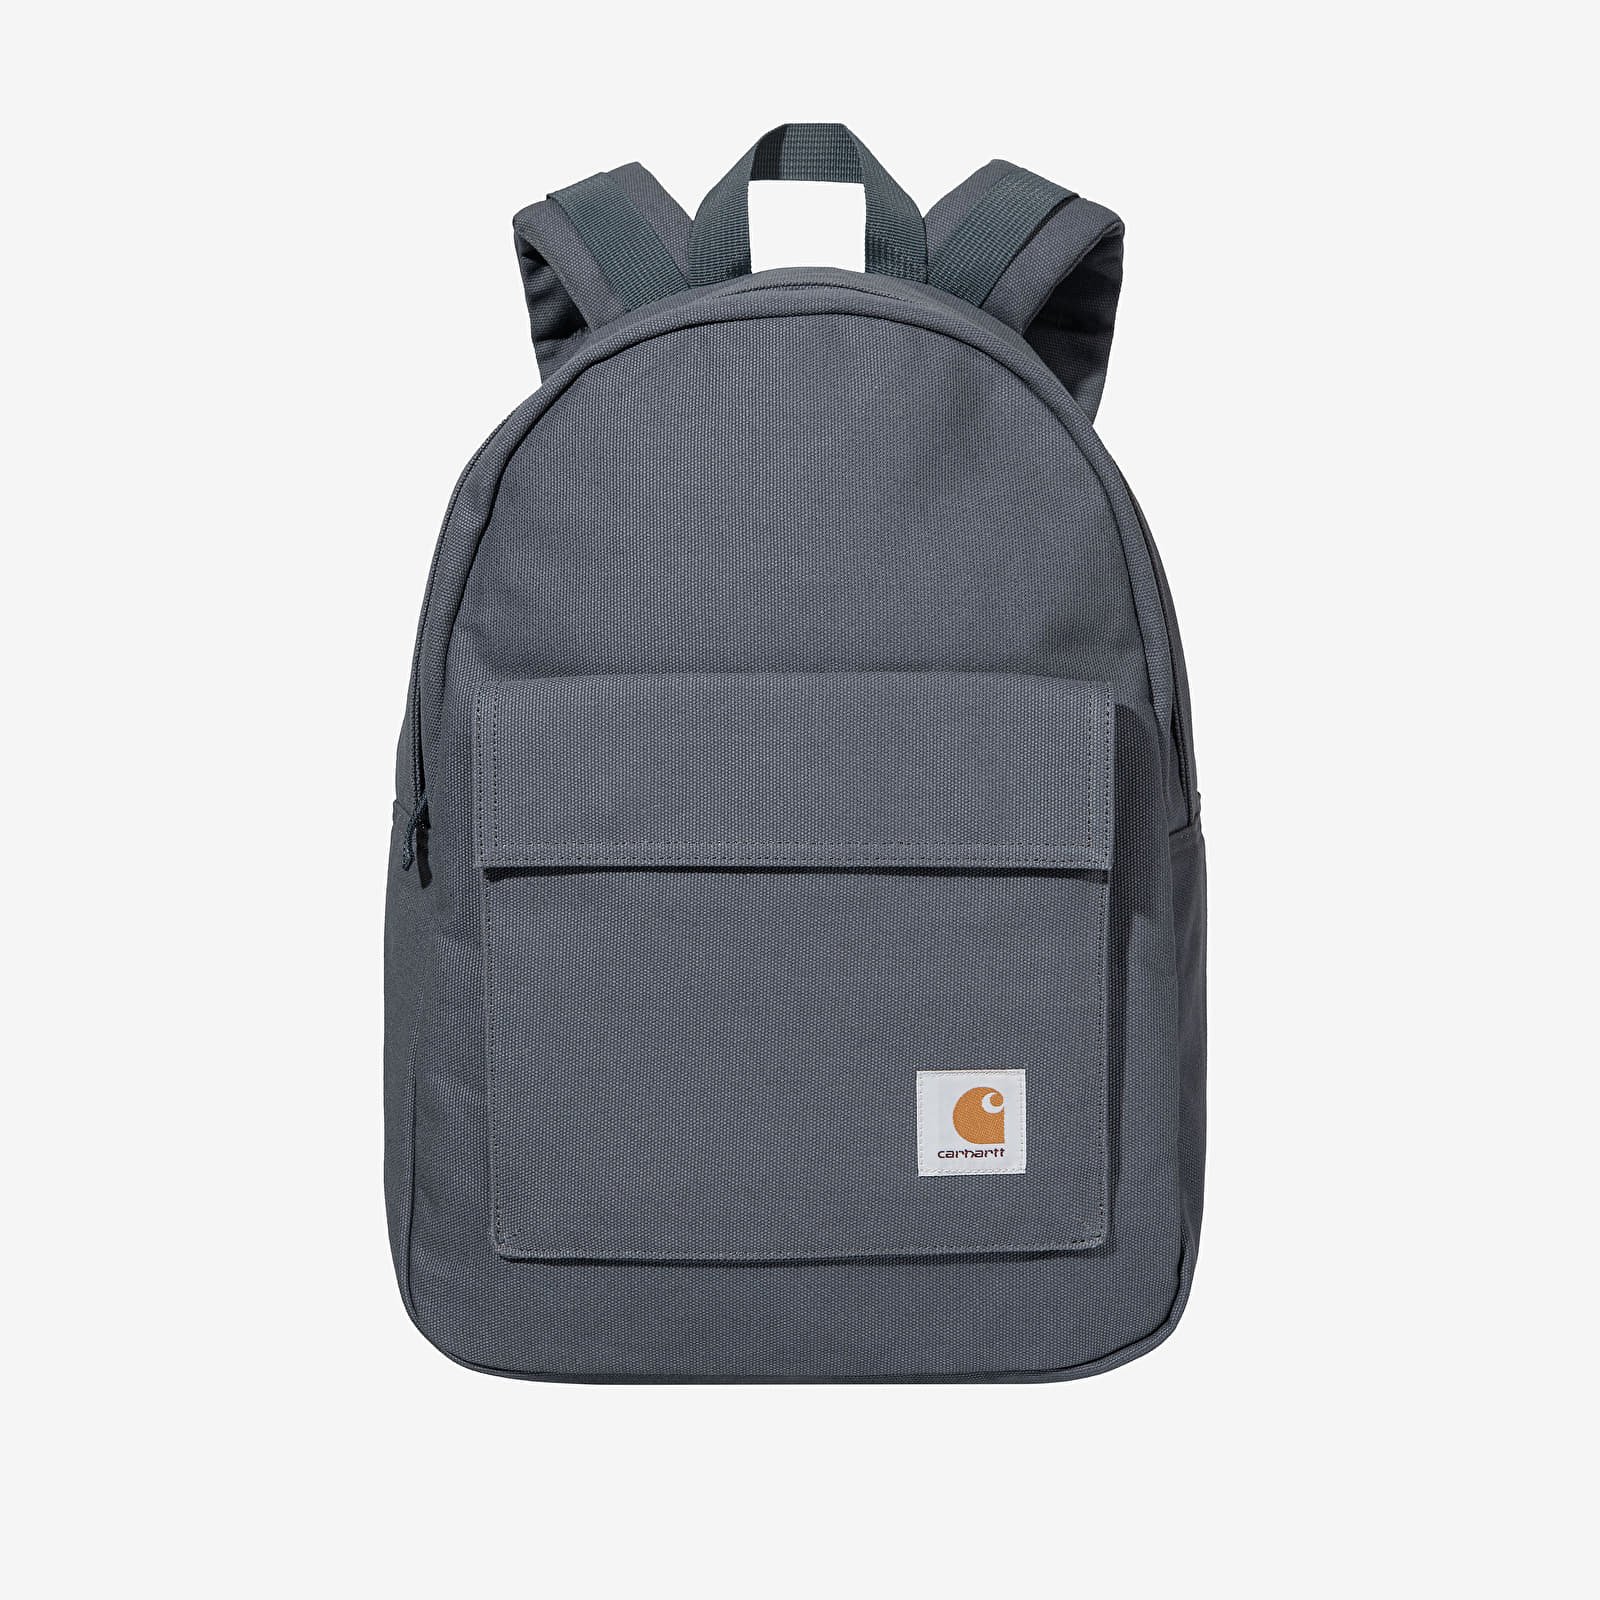 Zaino Carhartt WIP Backpack Dawn Backpack Blue, Universal I031588.0RXX